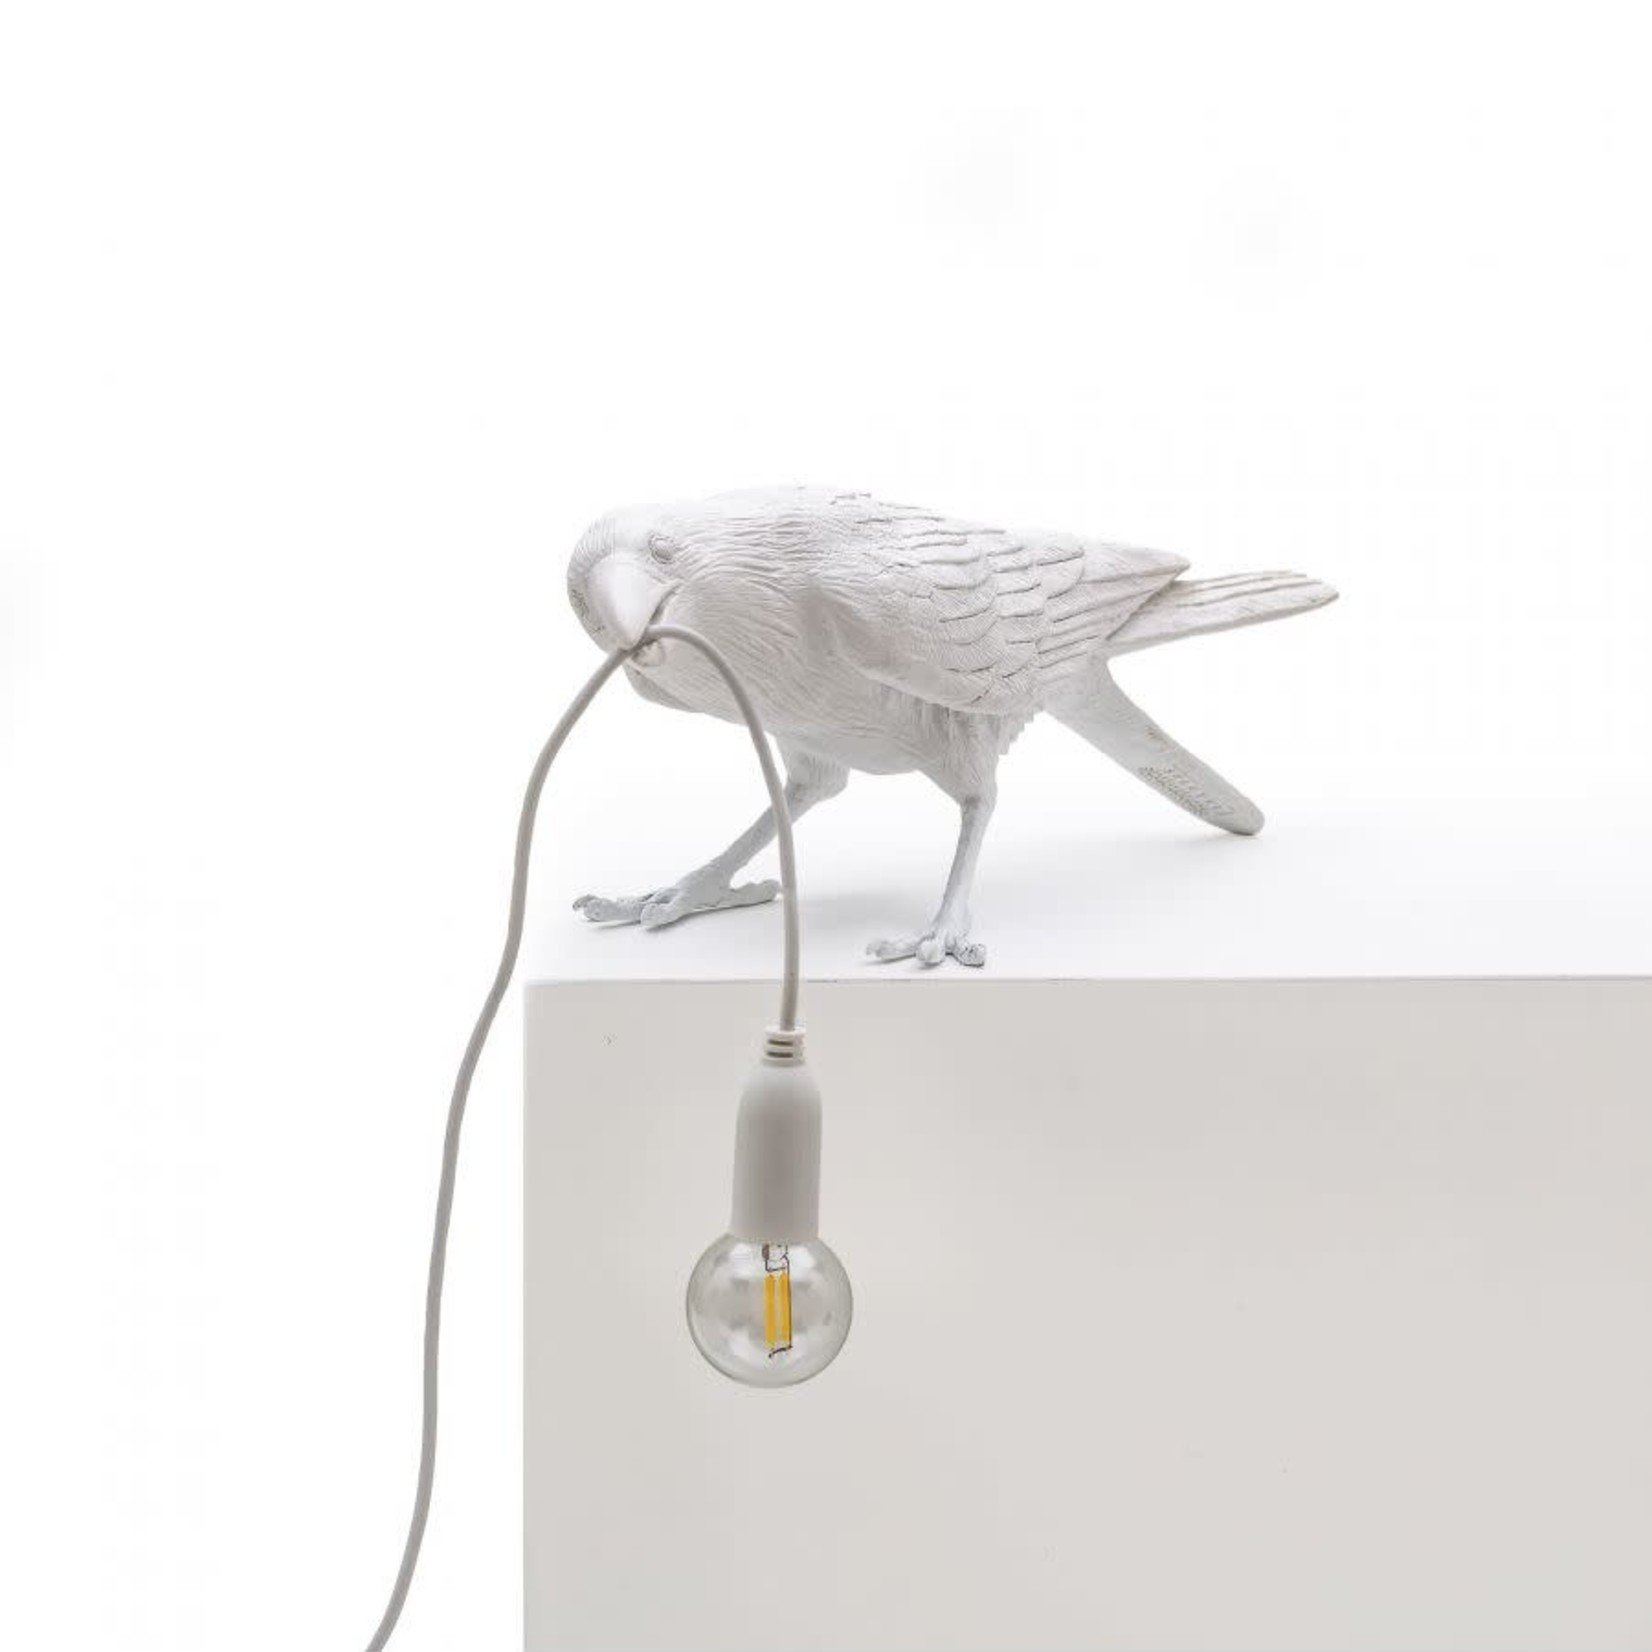 SELETTI SELETTI - The bird lamp - Playing - White